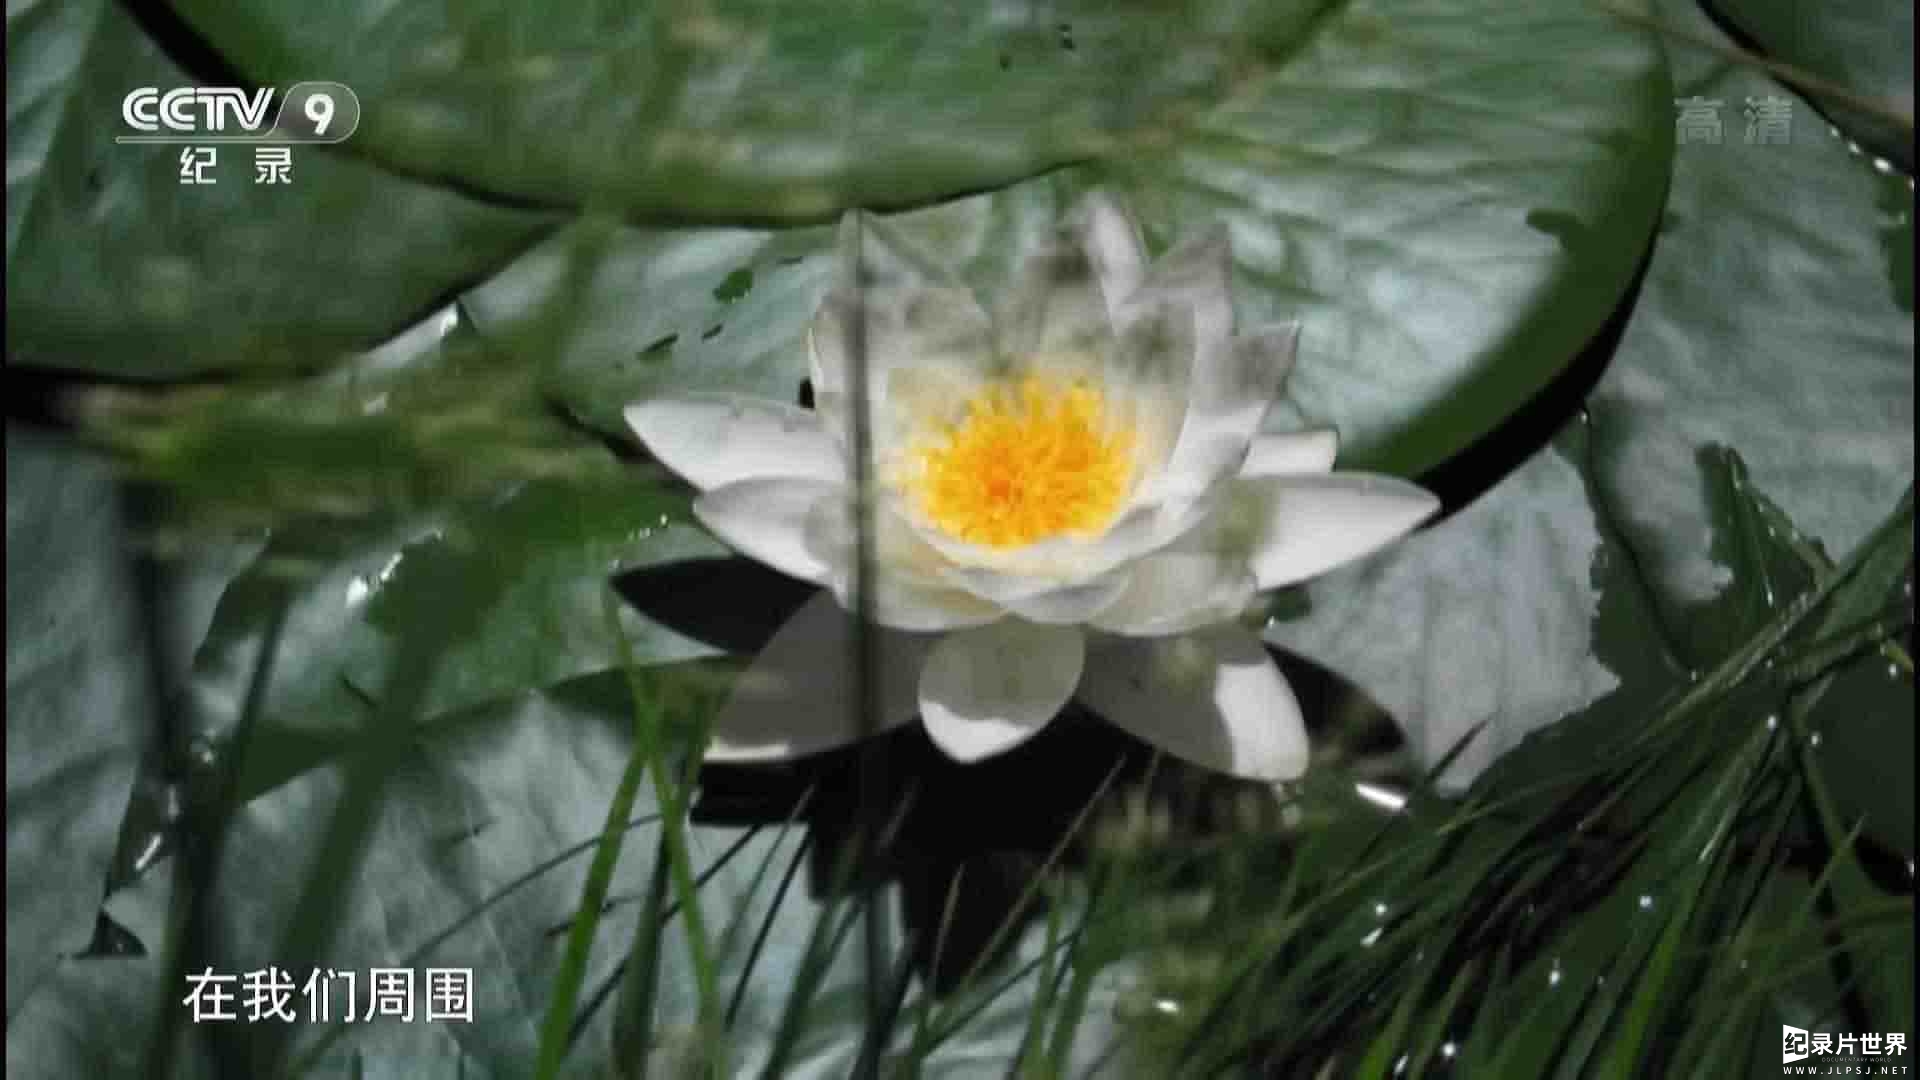 史密森频道/央视纪录片《植物的疯狂世界 Amazing Plants 2015》全1集